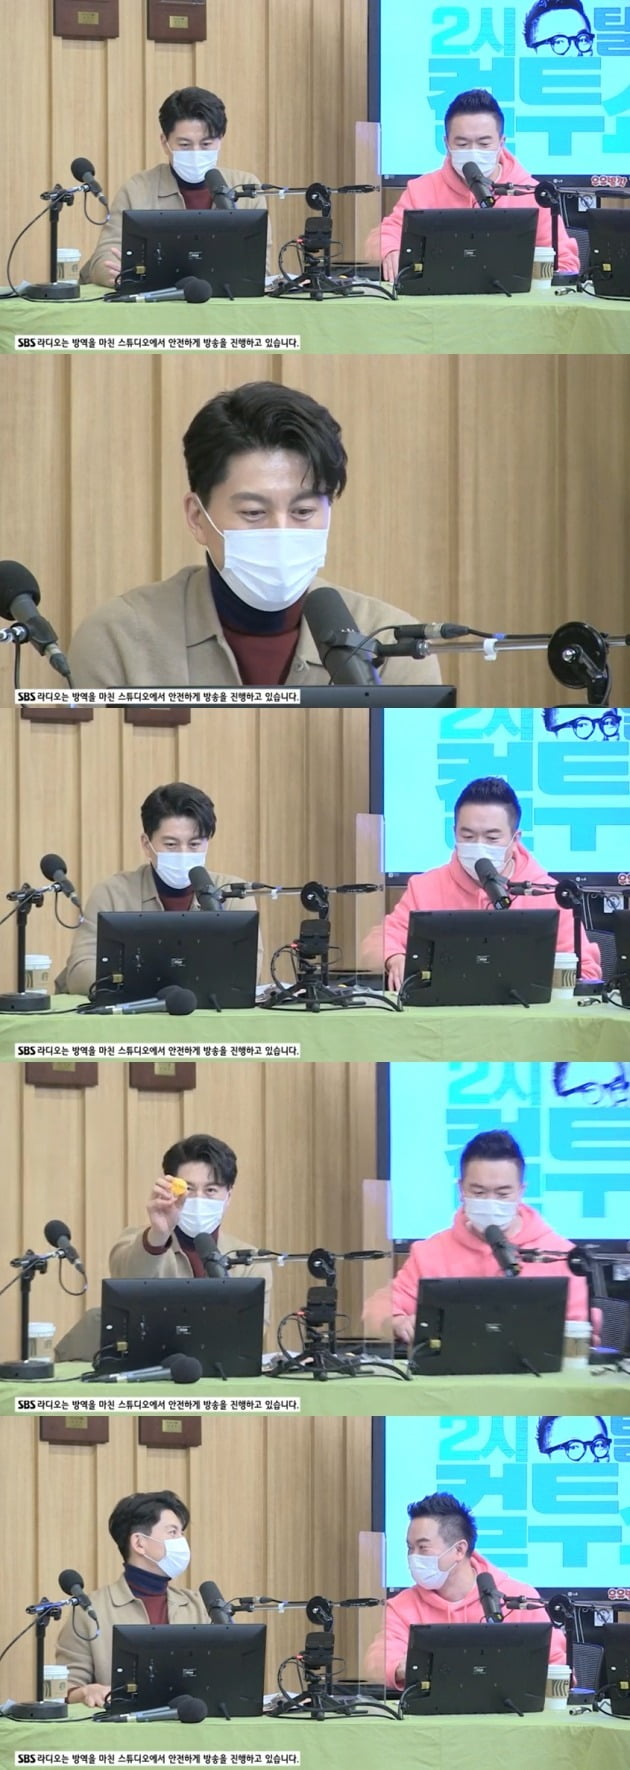 배우 류수영이 '컬투쇼' 스페셜DJ로 함께했다. / 사진=SBS라디오 '컬투쇼' 보는 라디오 캡처